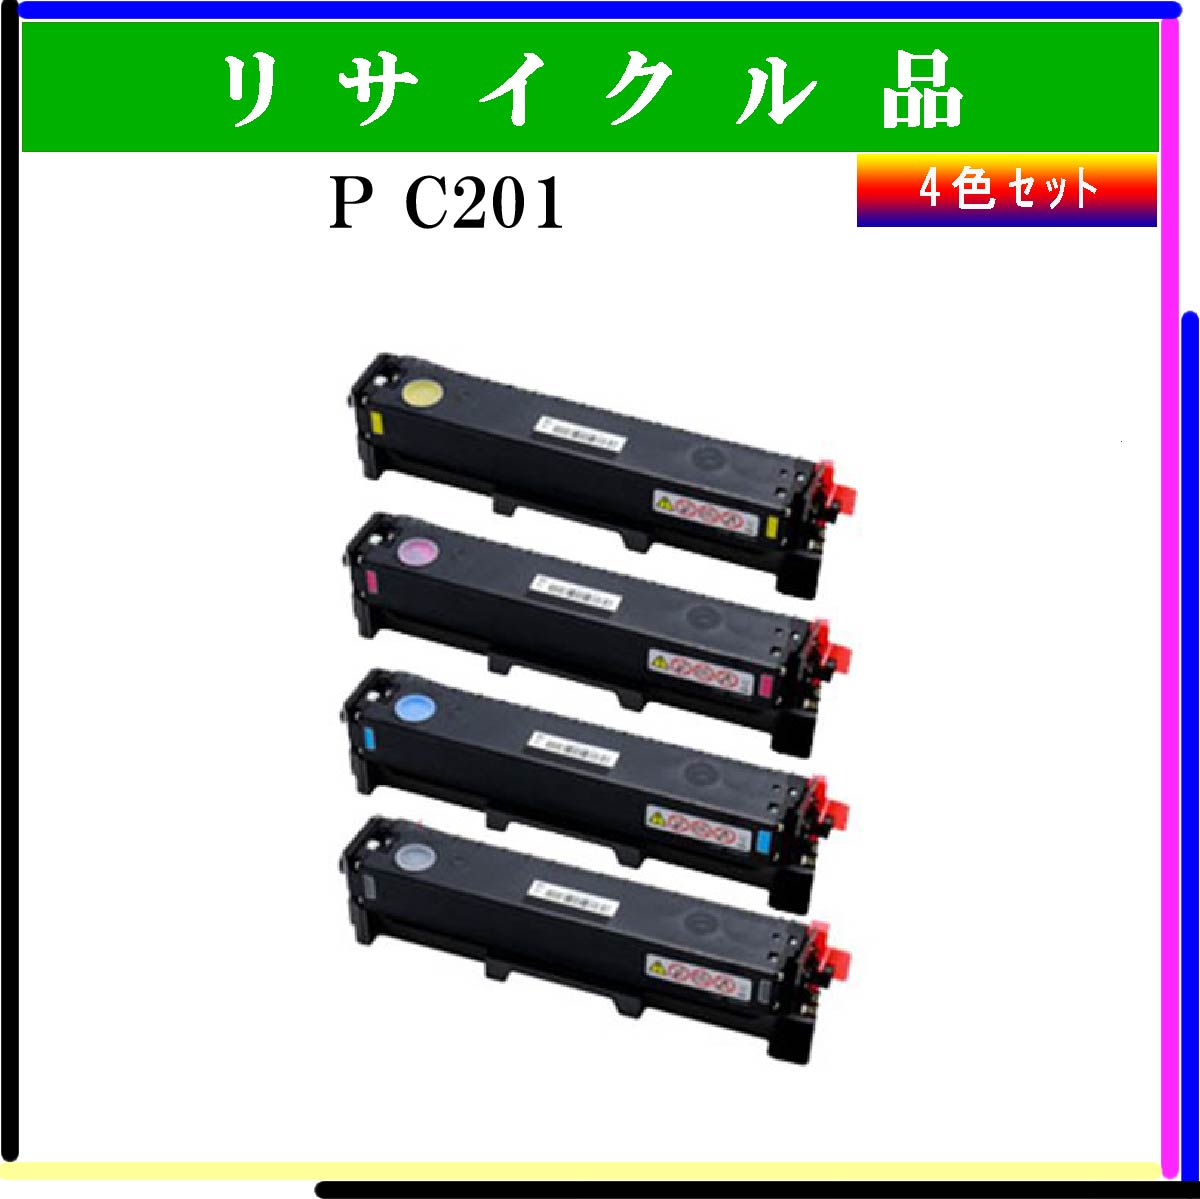 P C201 (4色ｾｯﾄ)